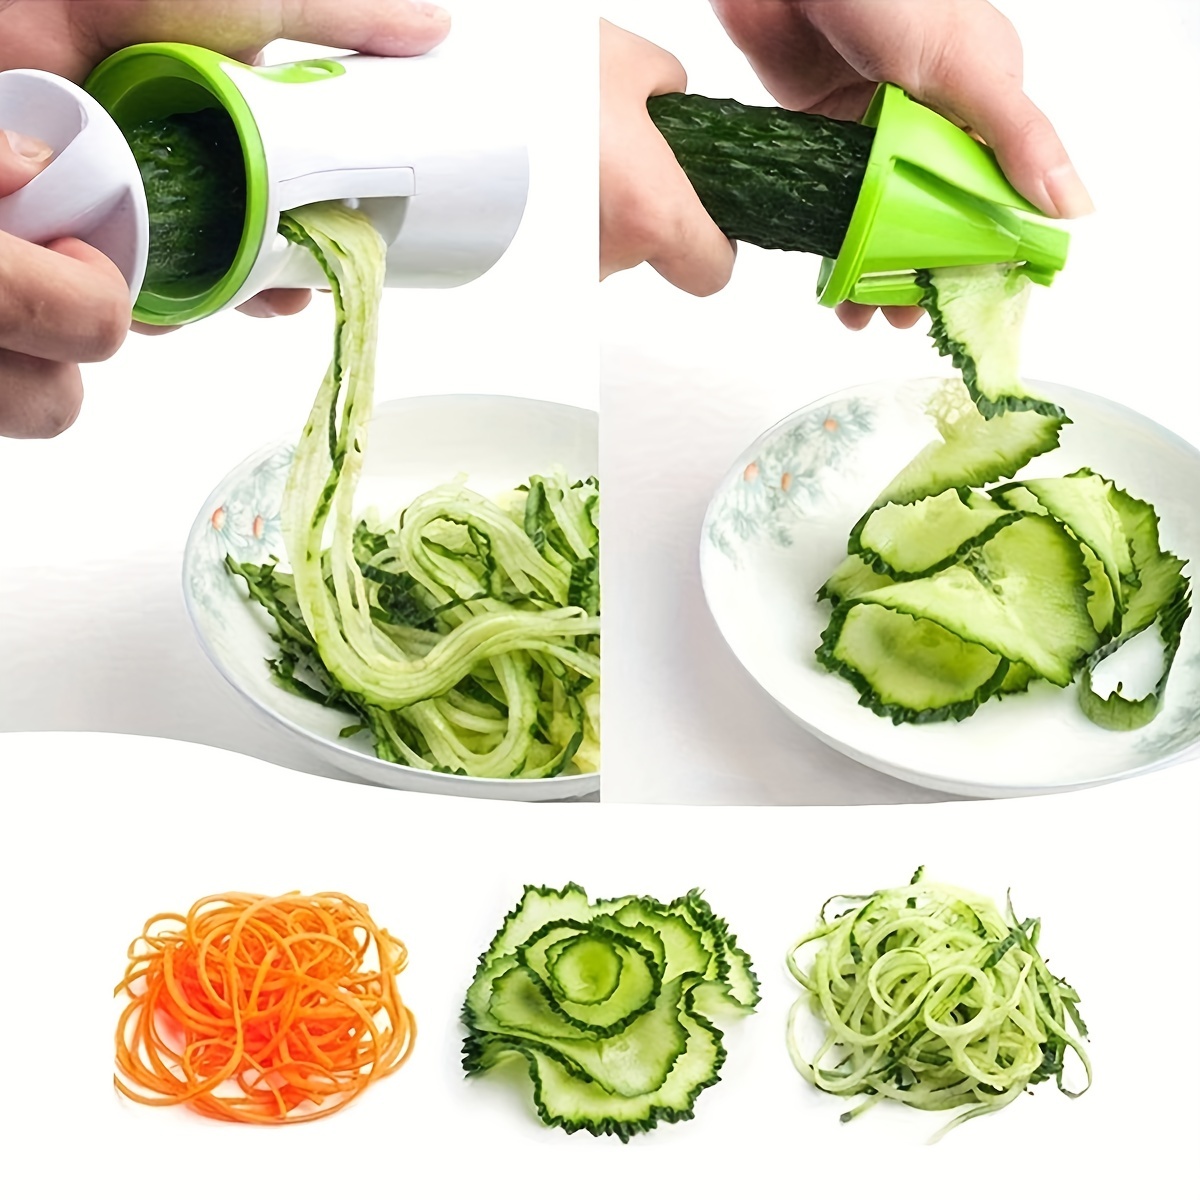 3 In 1 Spiralizer Vegetable Slicer Vegetable Spiral Slicer Cutter